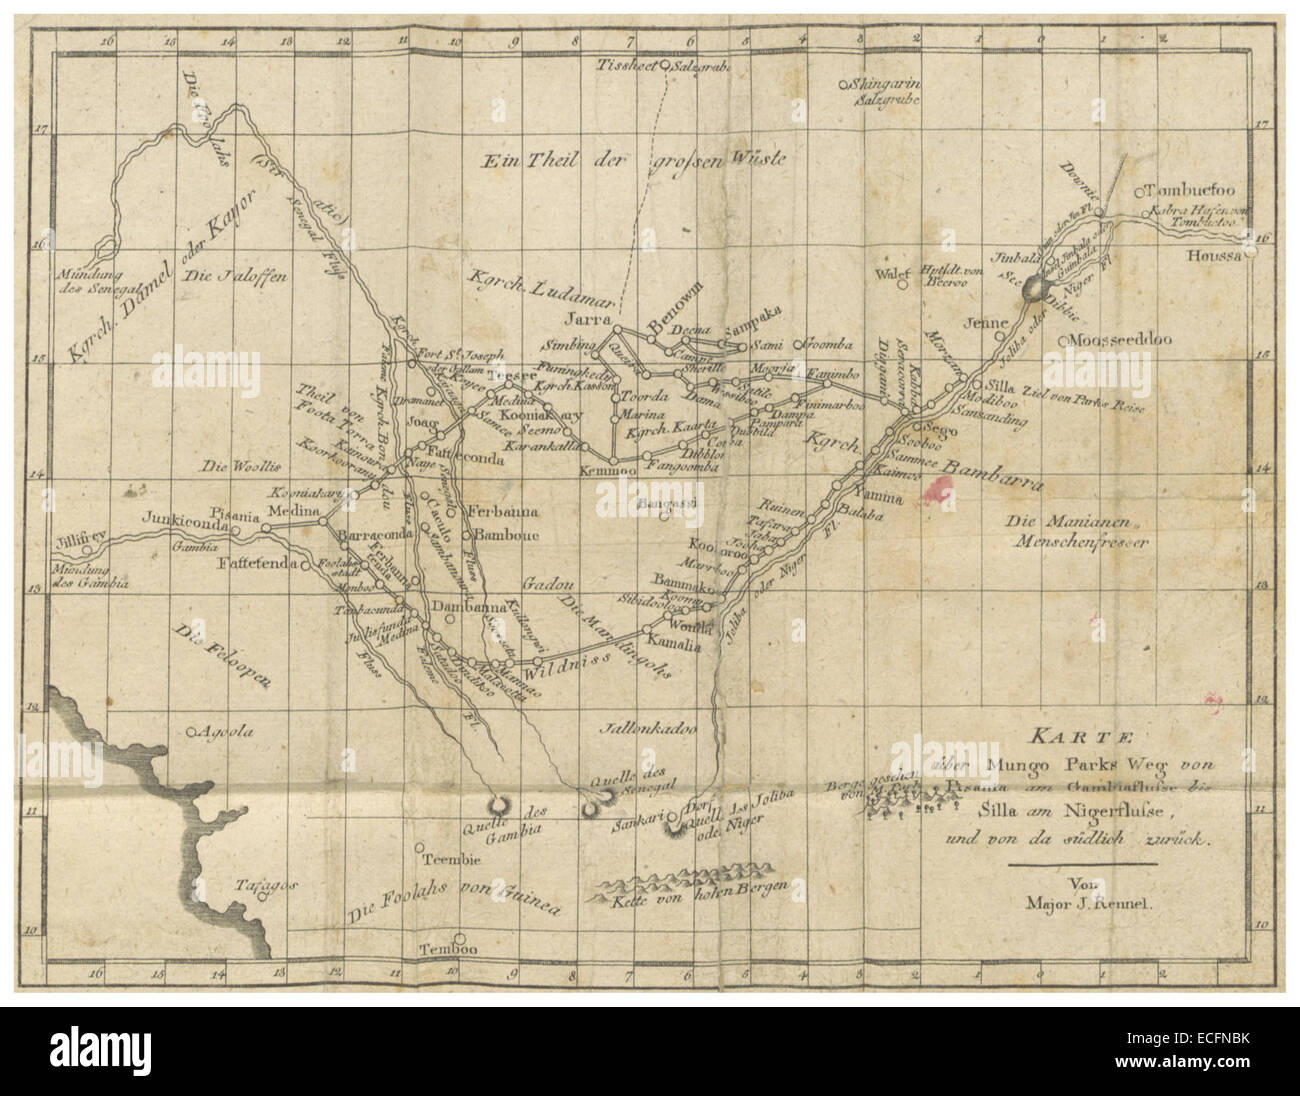 PARK(1800) p359 Karte mit parchi Mungo Reiseroute in Westafrika vom Gambia Fluss zum Niger Fluss Foto Stock